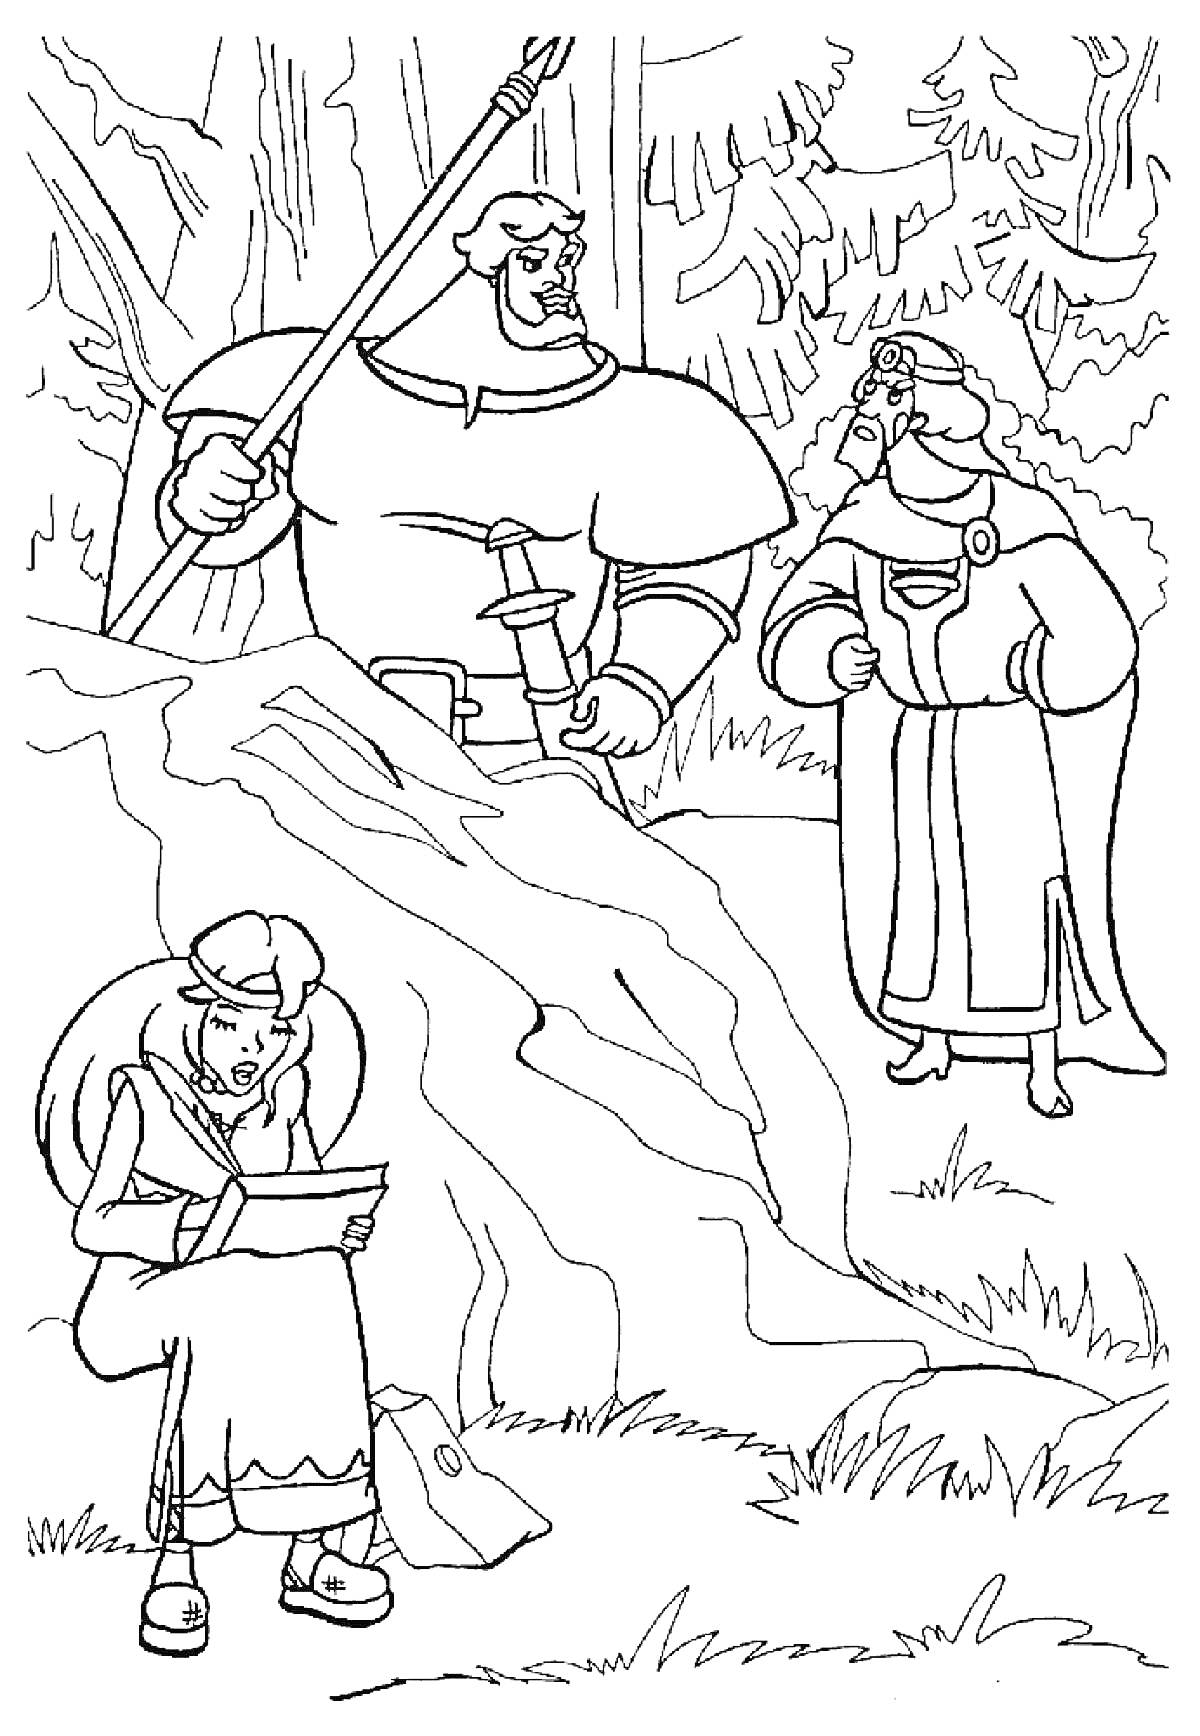 Три Богатыря - воины с оружием и коронованный мужчина в лесу, девушка читает письмо на траве